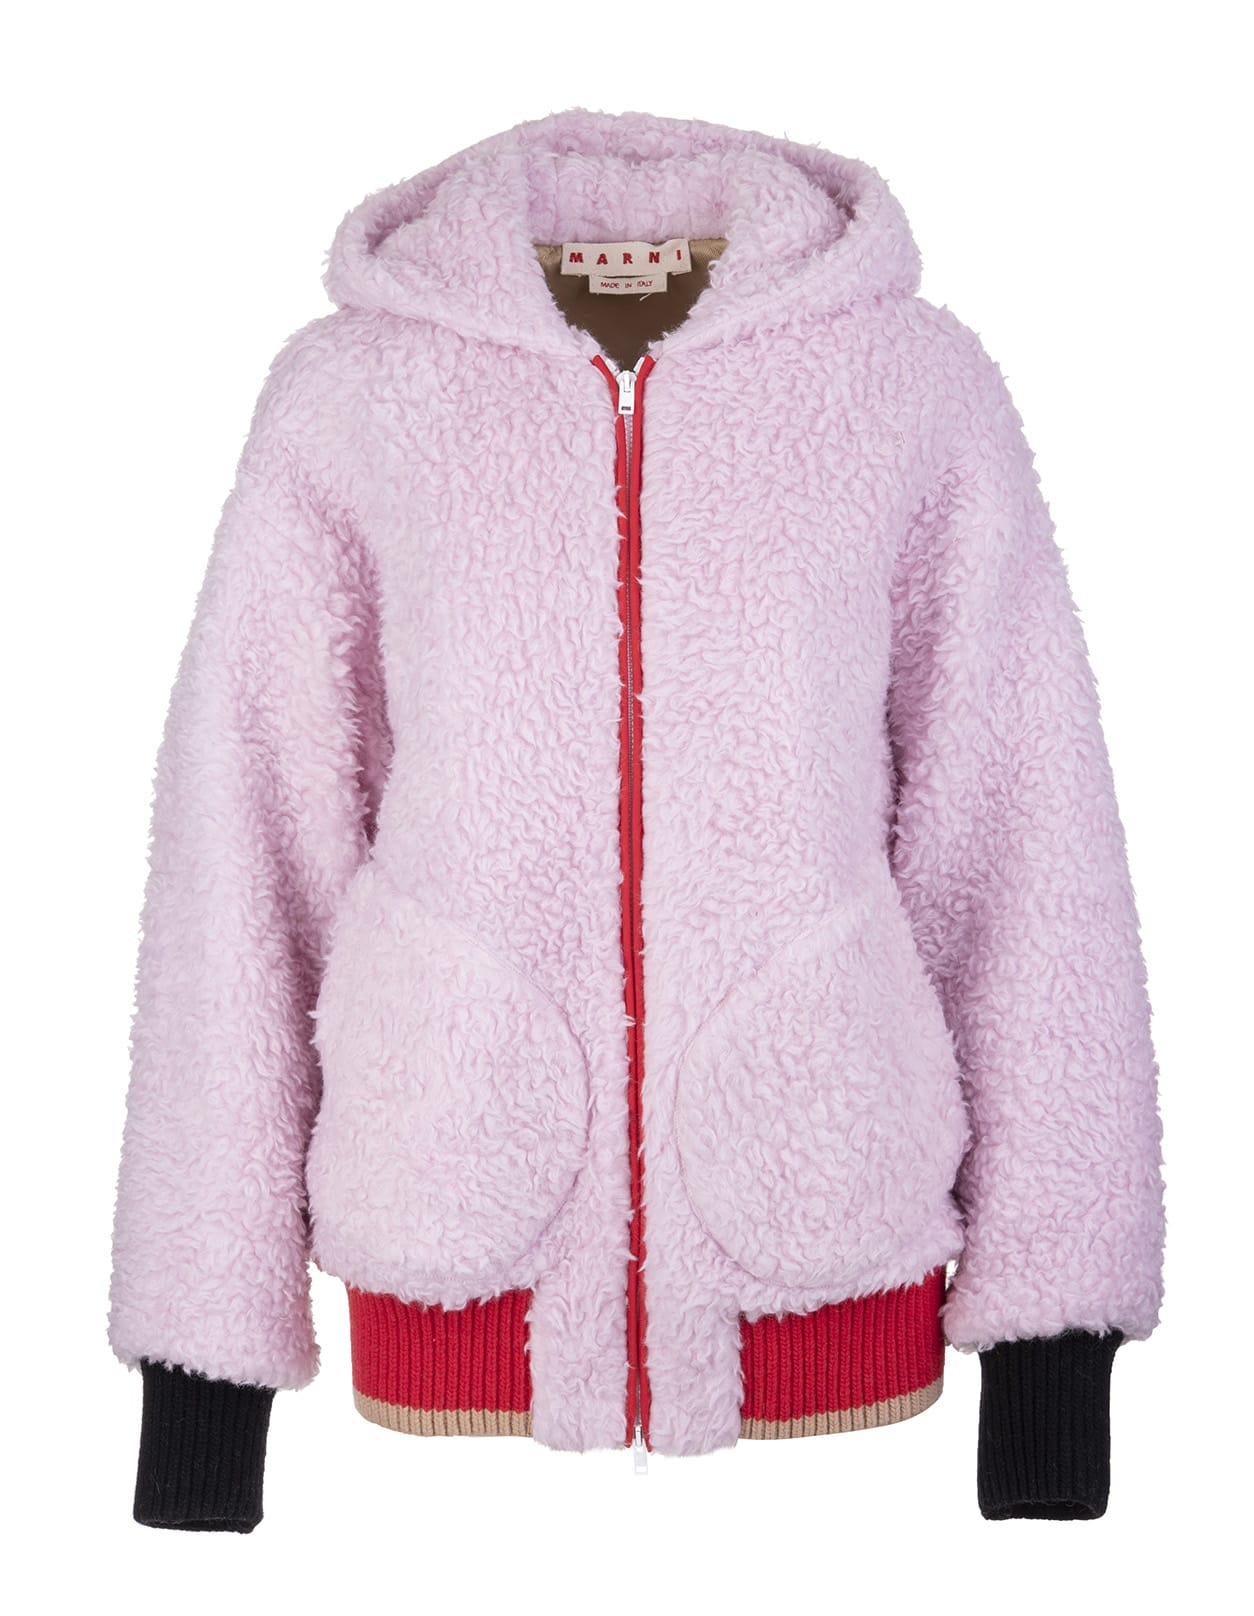 Marni Woman Hooded Pink Shearling Jacket